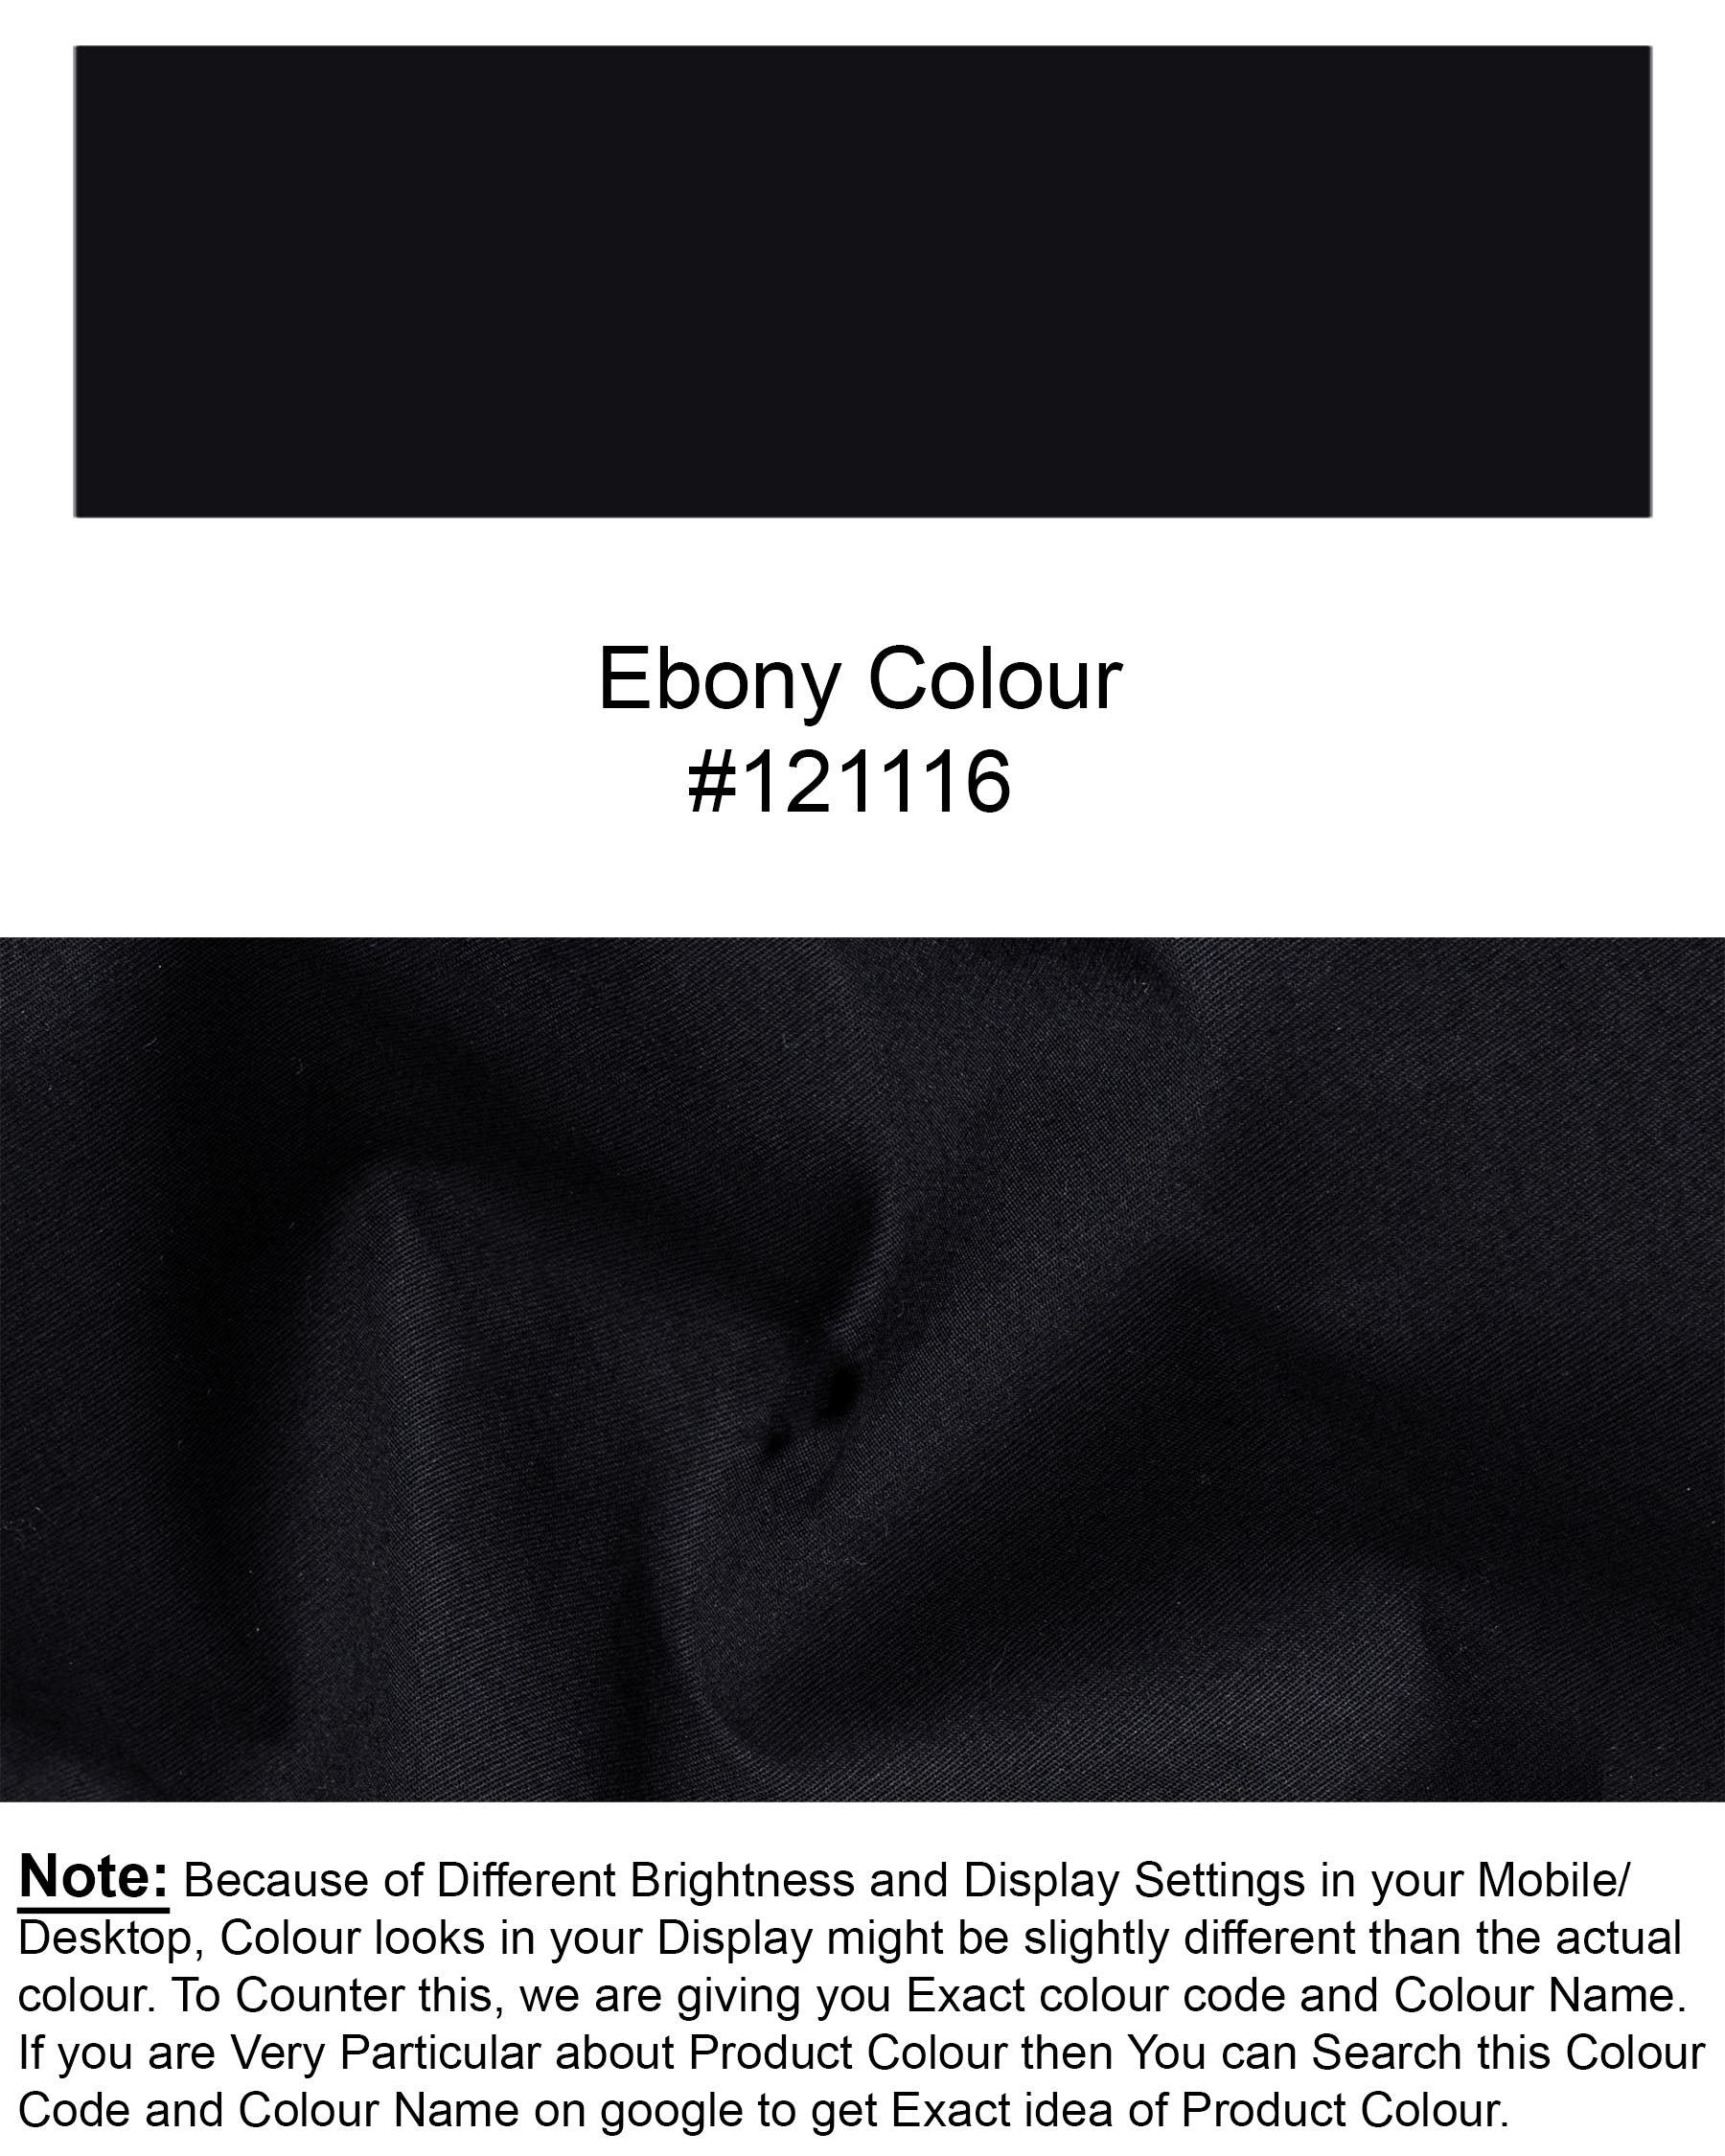 Ebony Black Premium Cotton Shirt 6873-BD-38,6873-BD-38,6873-BD-39,6873-BD-39,6873-BD-40,6873-BD-40,6873-BD-42,6873-BD-42,6873-BD-44,6873-BD-44,6873-BD-46,6873-BD-46,6873-BD-48,6873-BD-48,6873-BD-50,6873-BD-50,6873-BD-52,6873-BD-52